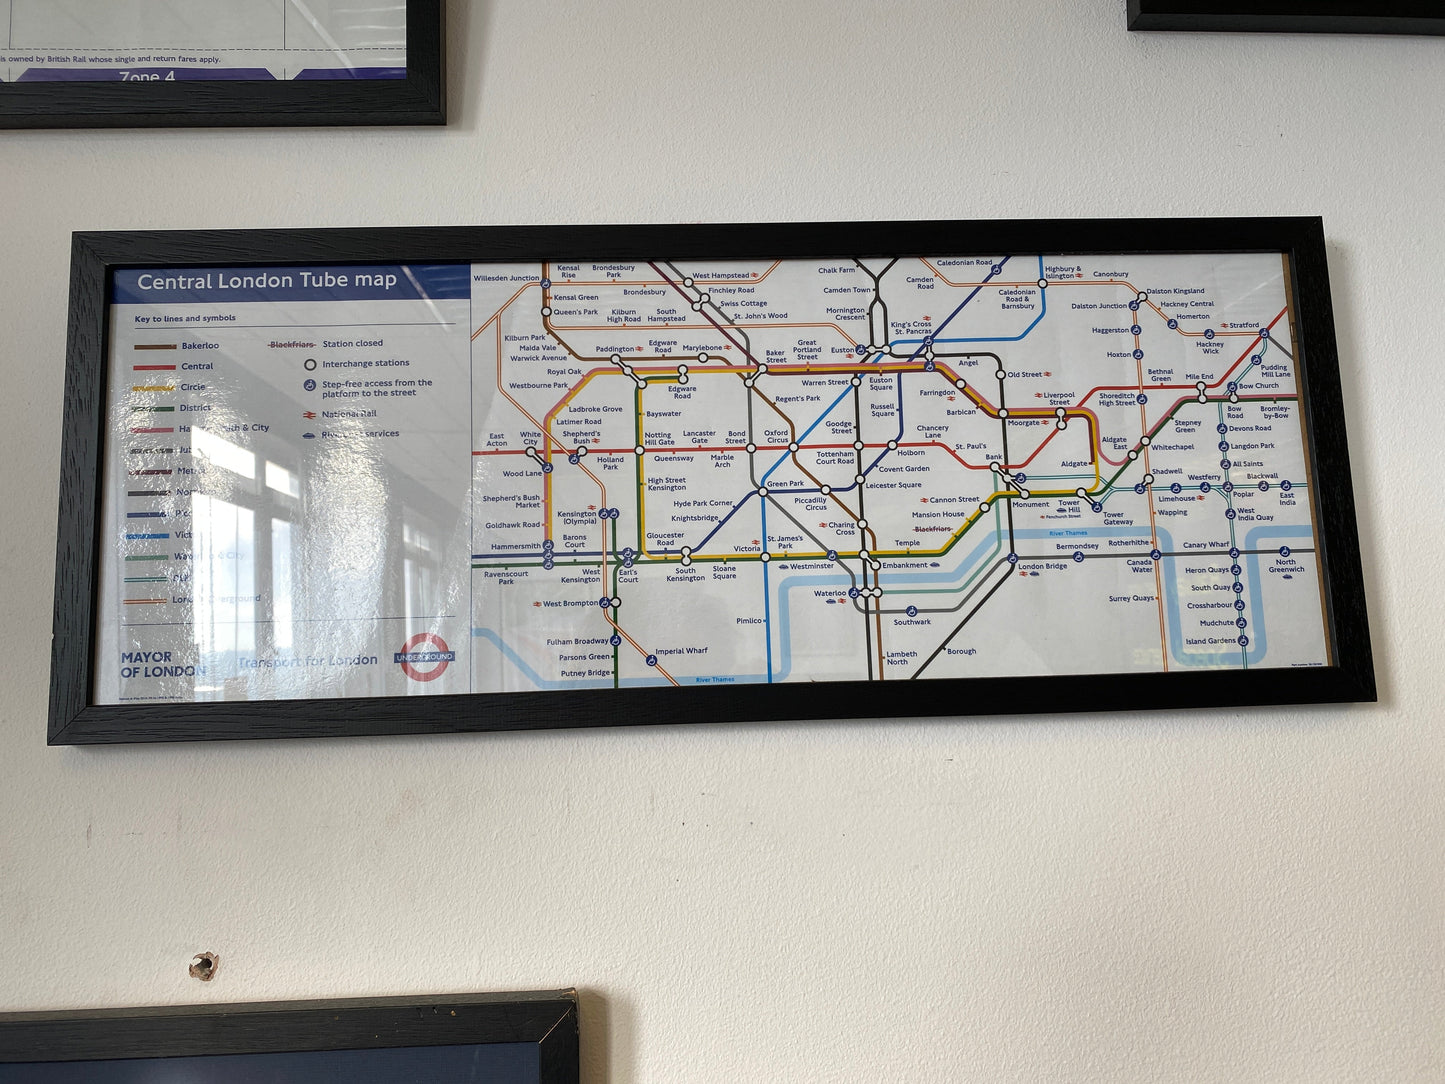 London Transport Central London Tube Map (Framed)